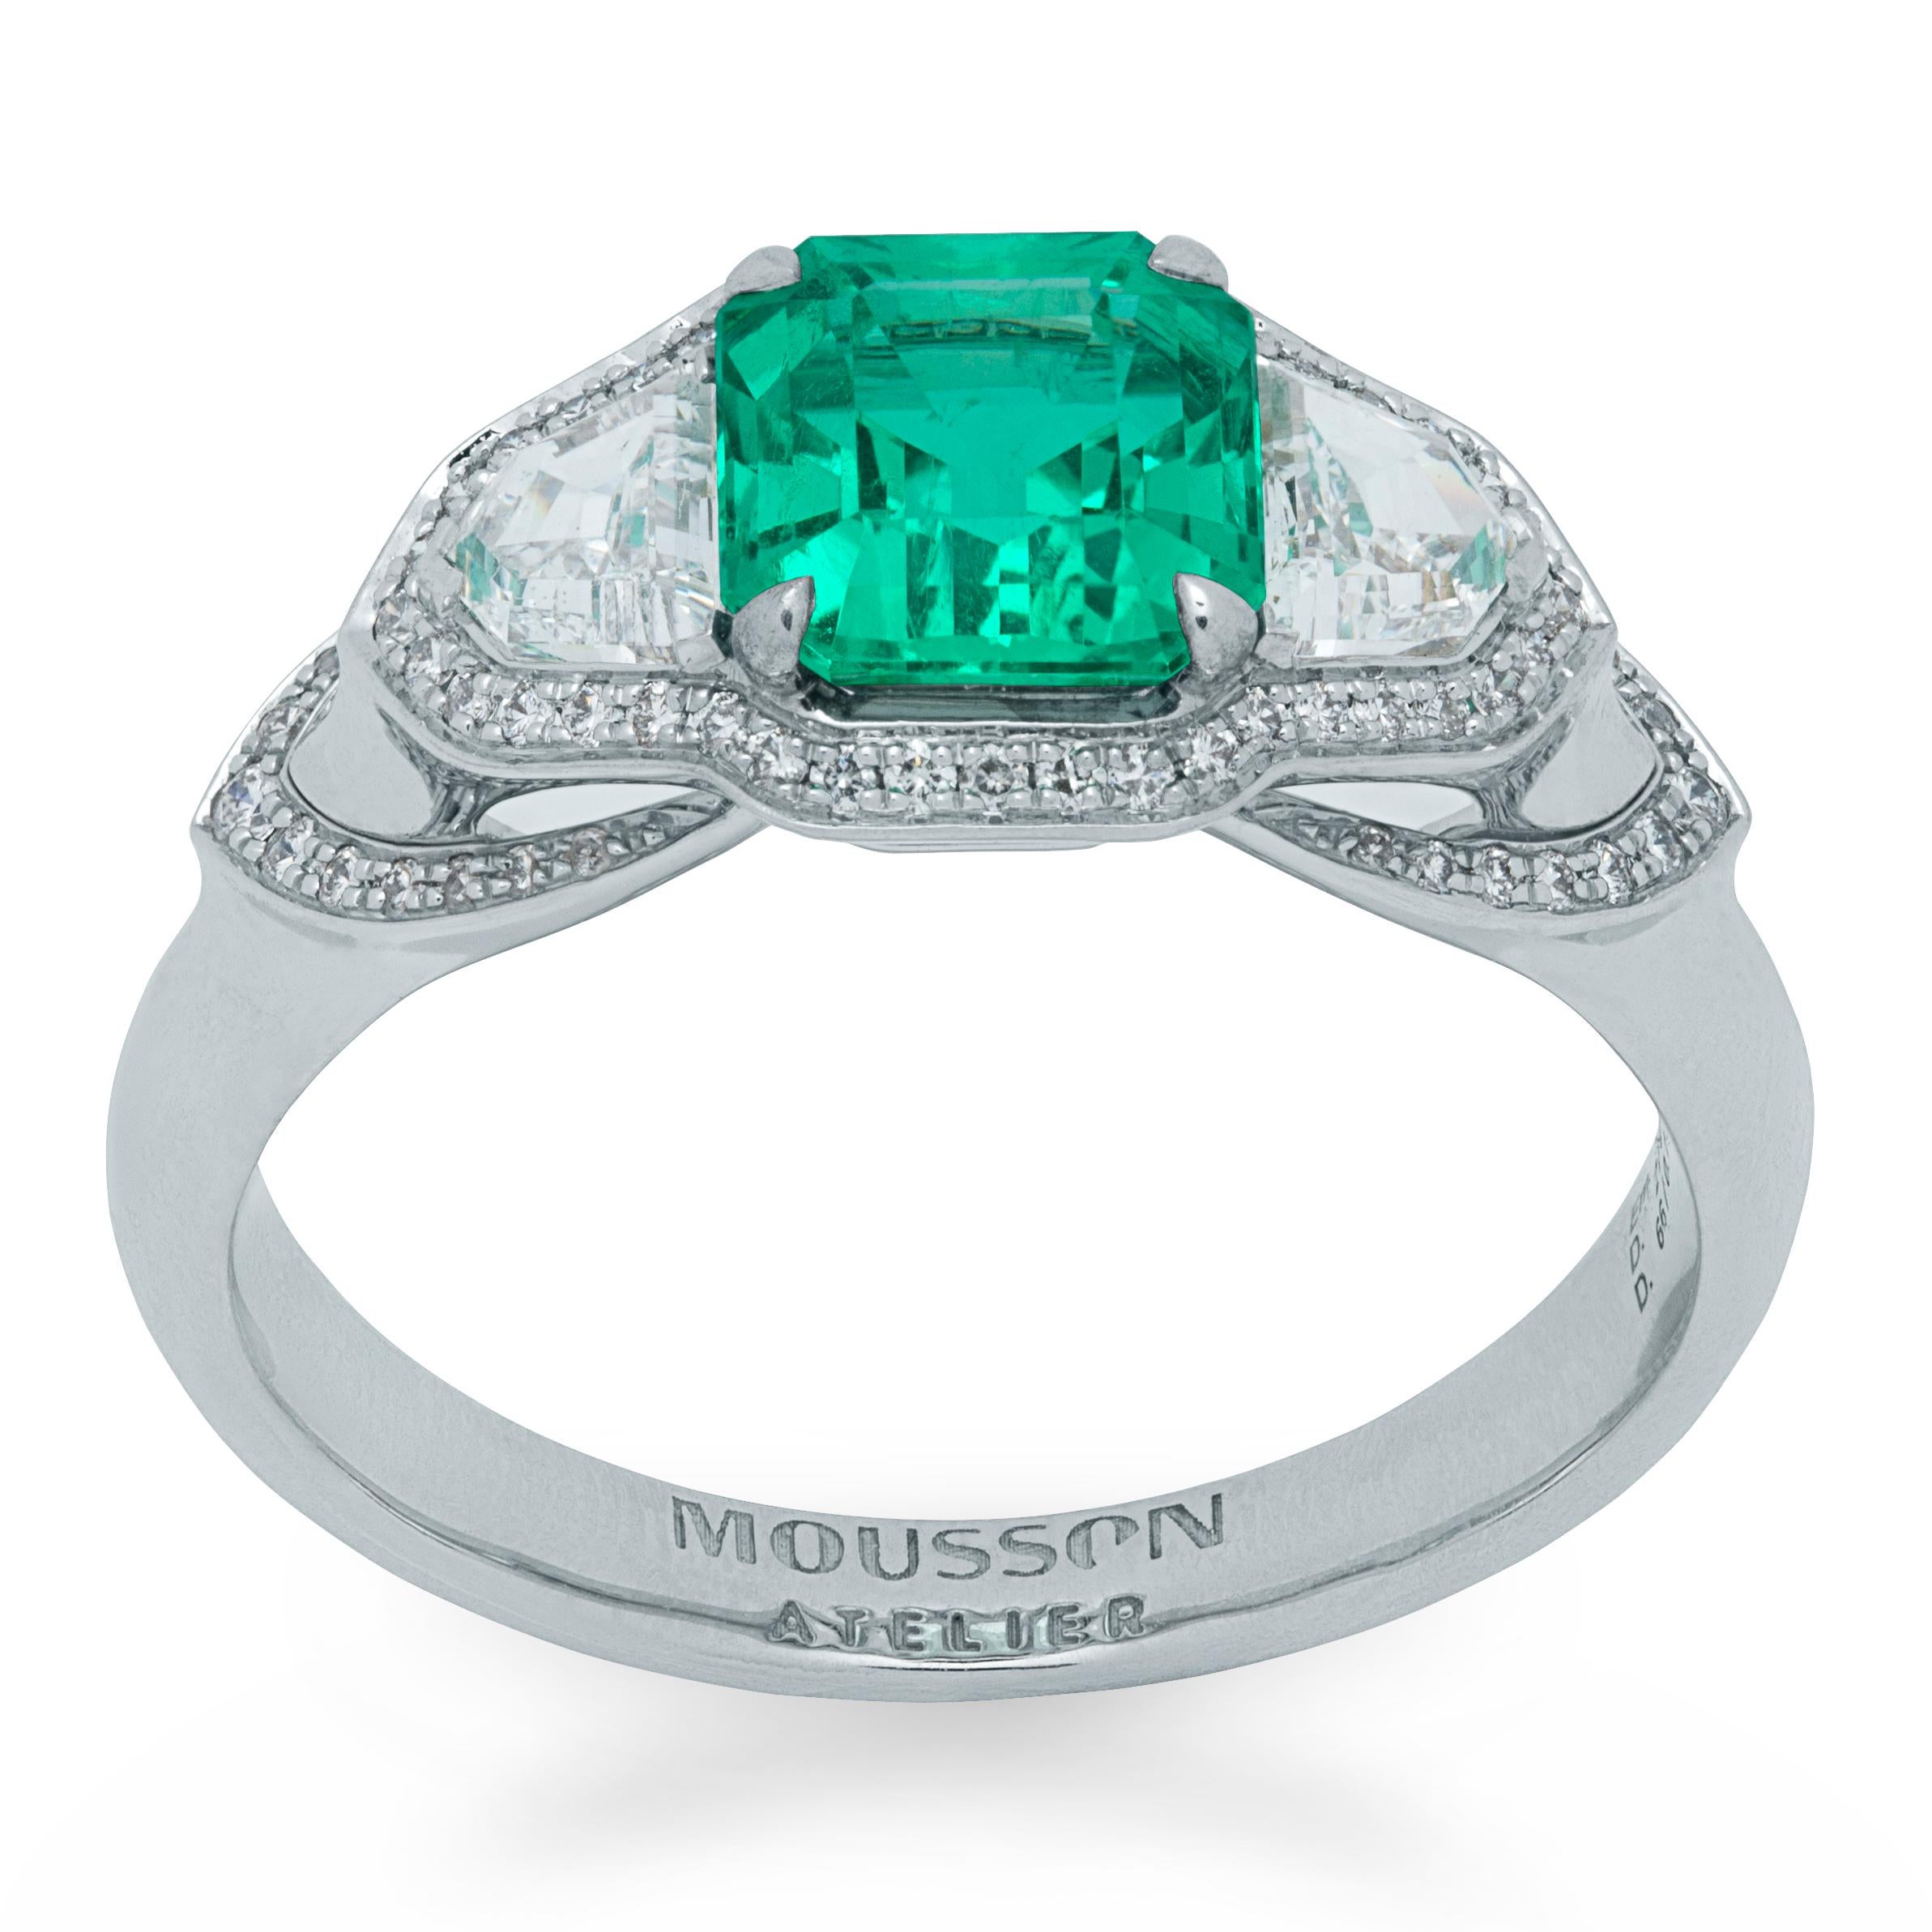 GRS-zertifizierter 1,39 Karat kolumbianischer Smaragd-Diamant-Ring aus 18 Karat Weißgold

Klassik ist immer in Mode! Aber wenn der Klassiker mit etwas Originellem ergänzt wird,  bringen Sie dort etwas Schwung, ihren eigenen einzigartigen Stil, dann